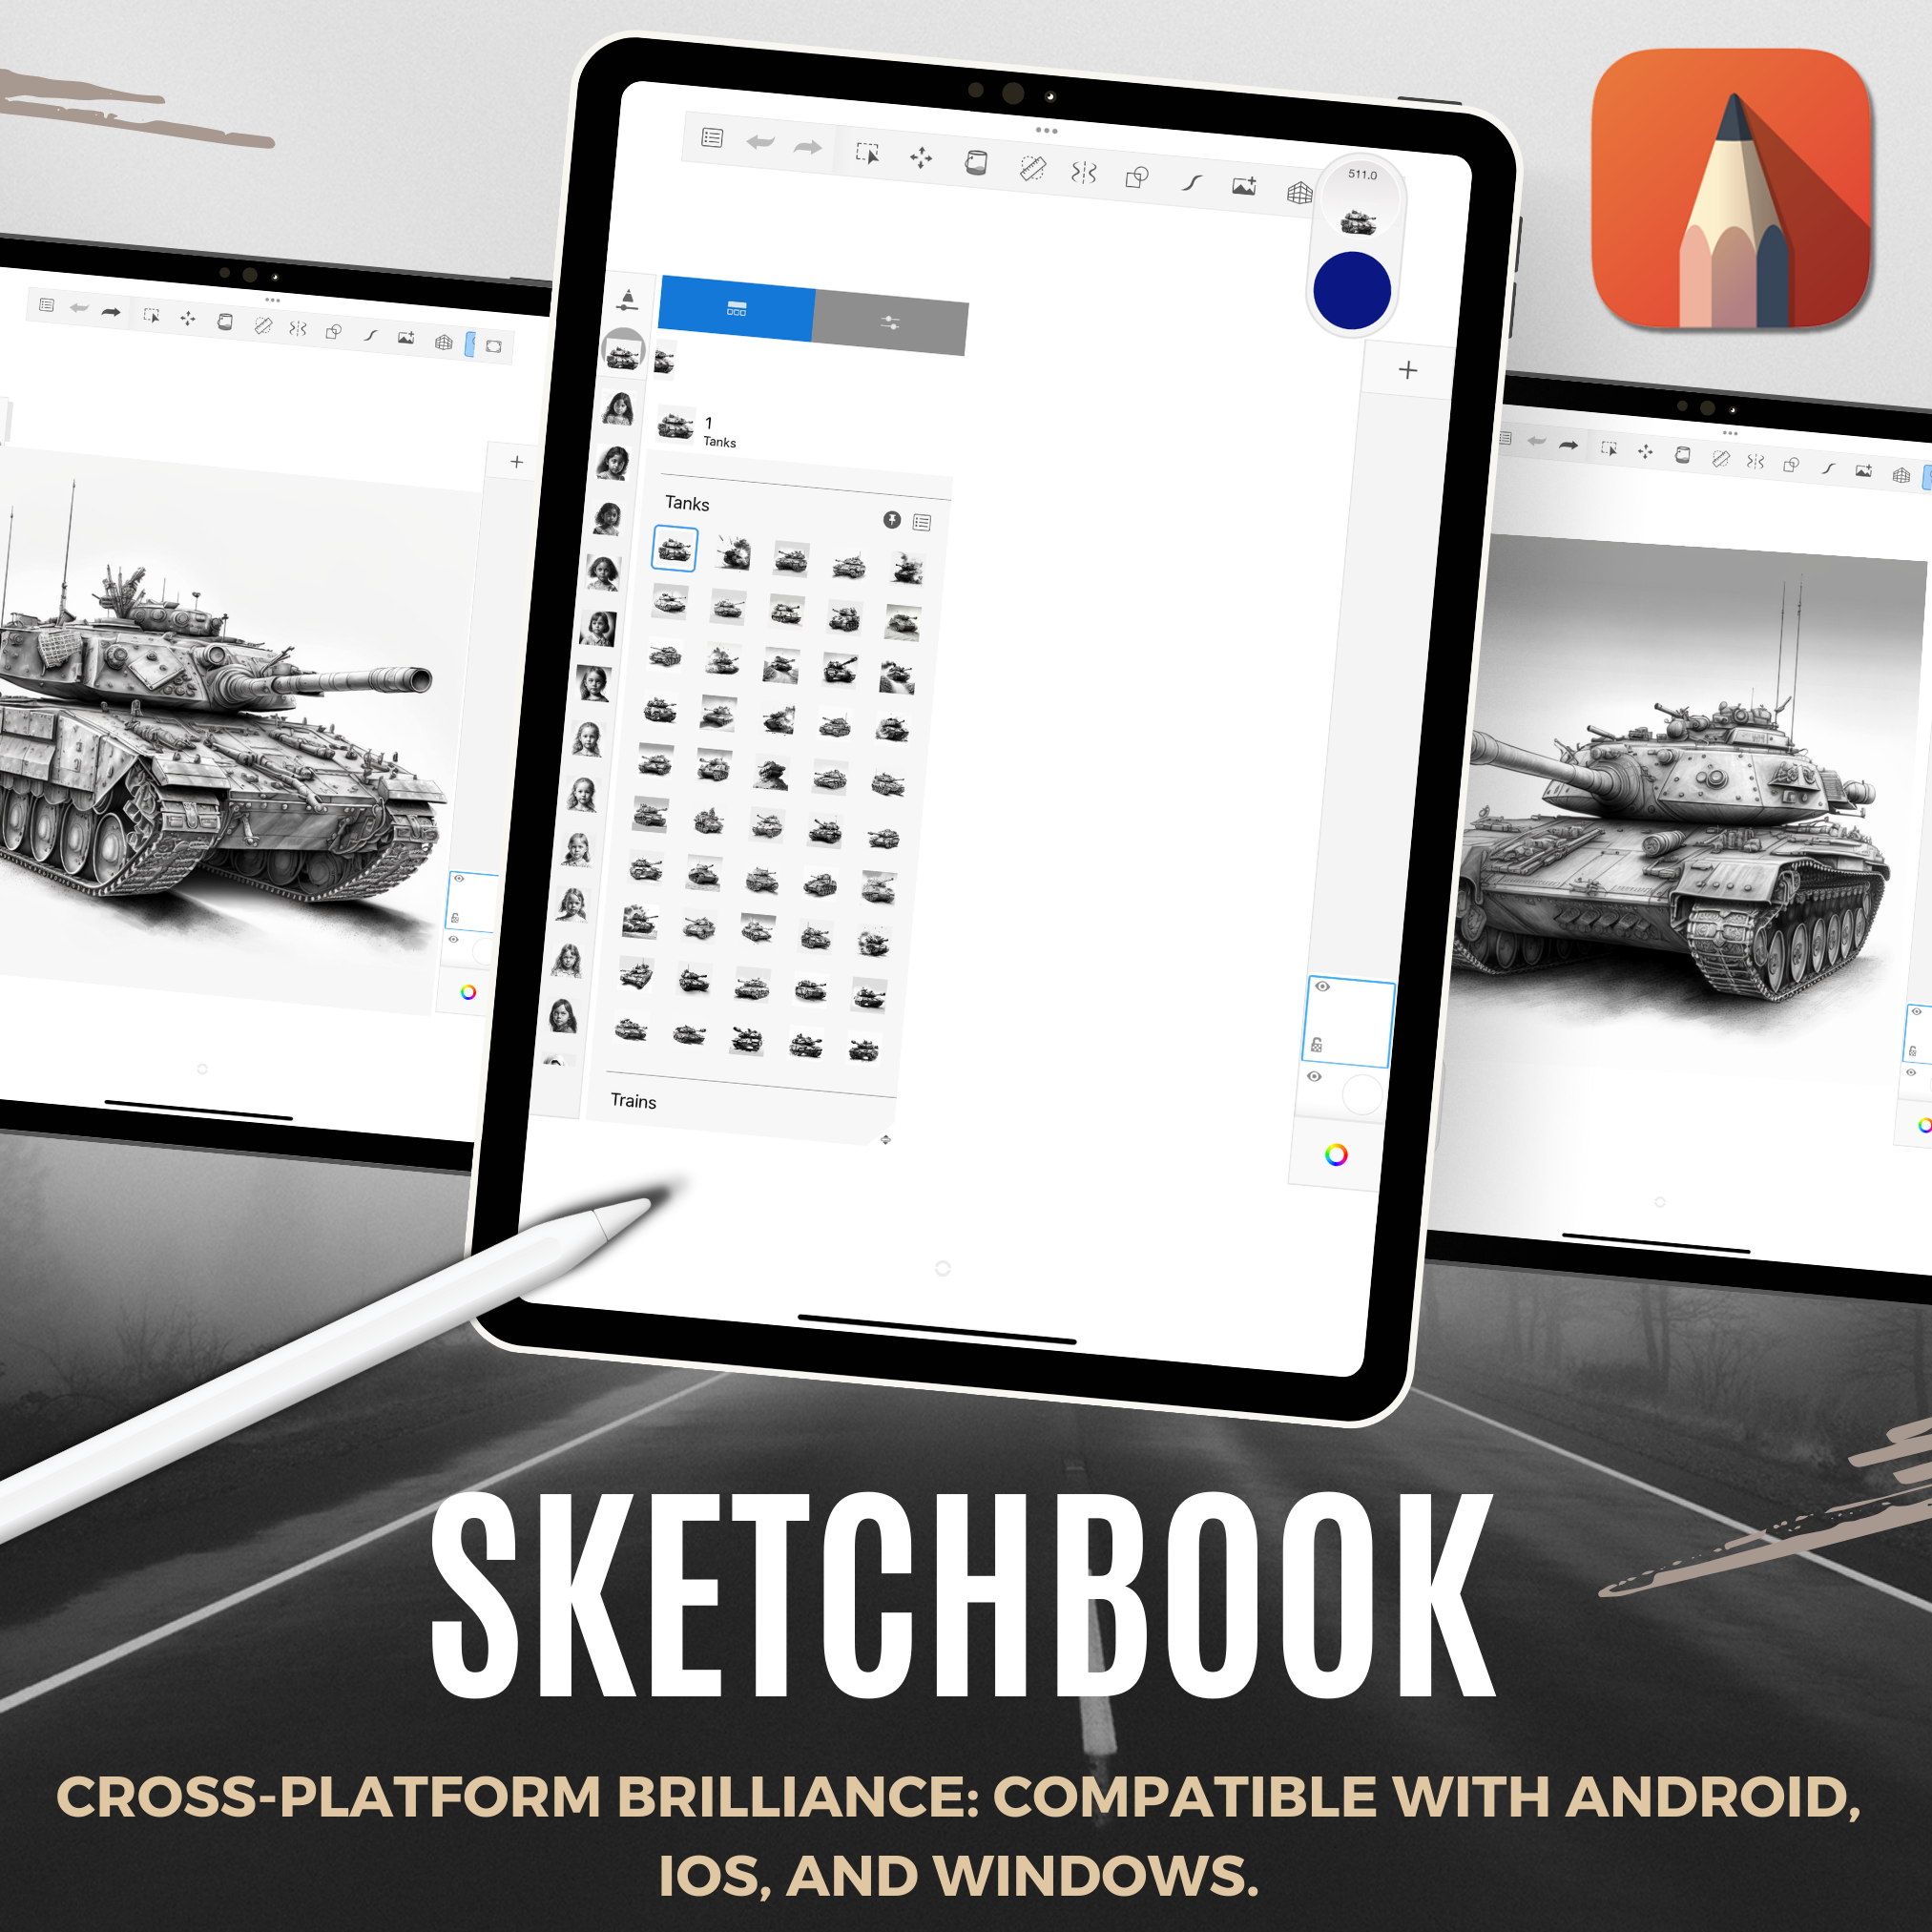 Tanks Digital Design Collection: 50 Procreate- und Skizzenbuchbilder